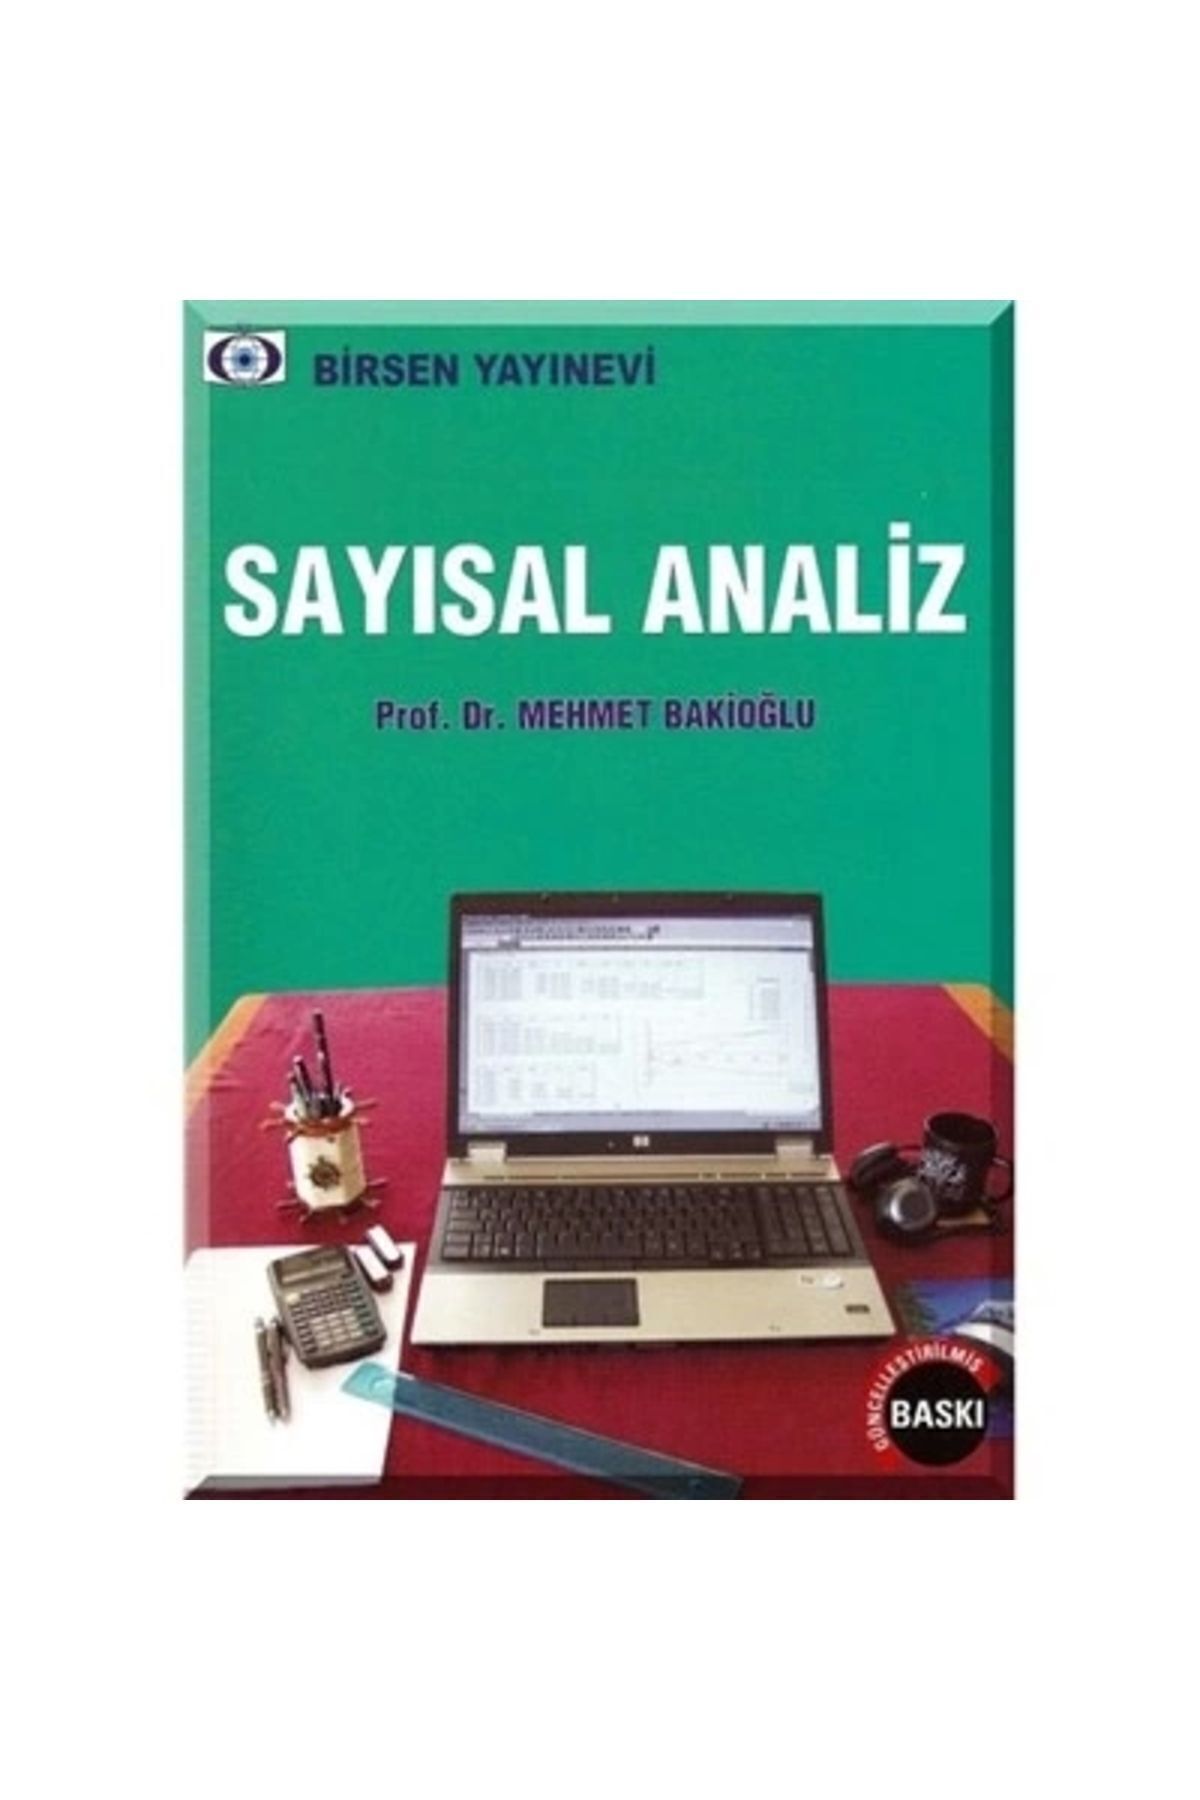 Birsen Yayınevi Sayısal Analiz / Mehmet Bakioğlu